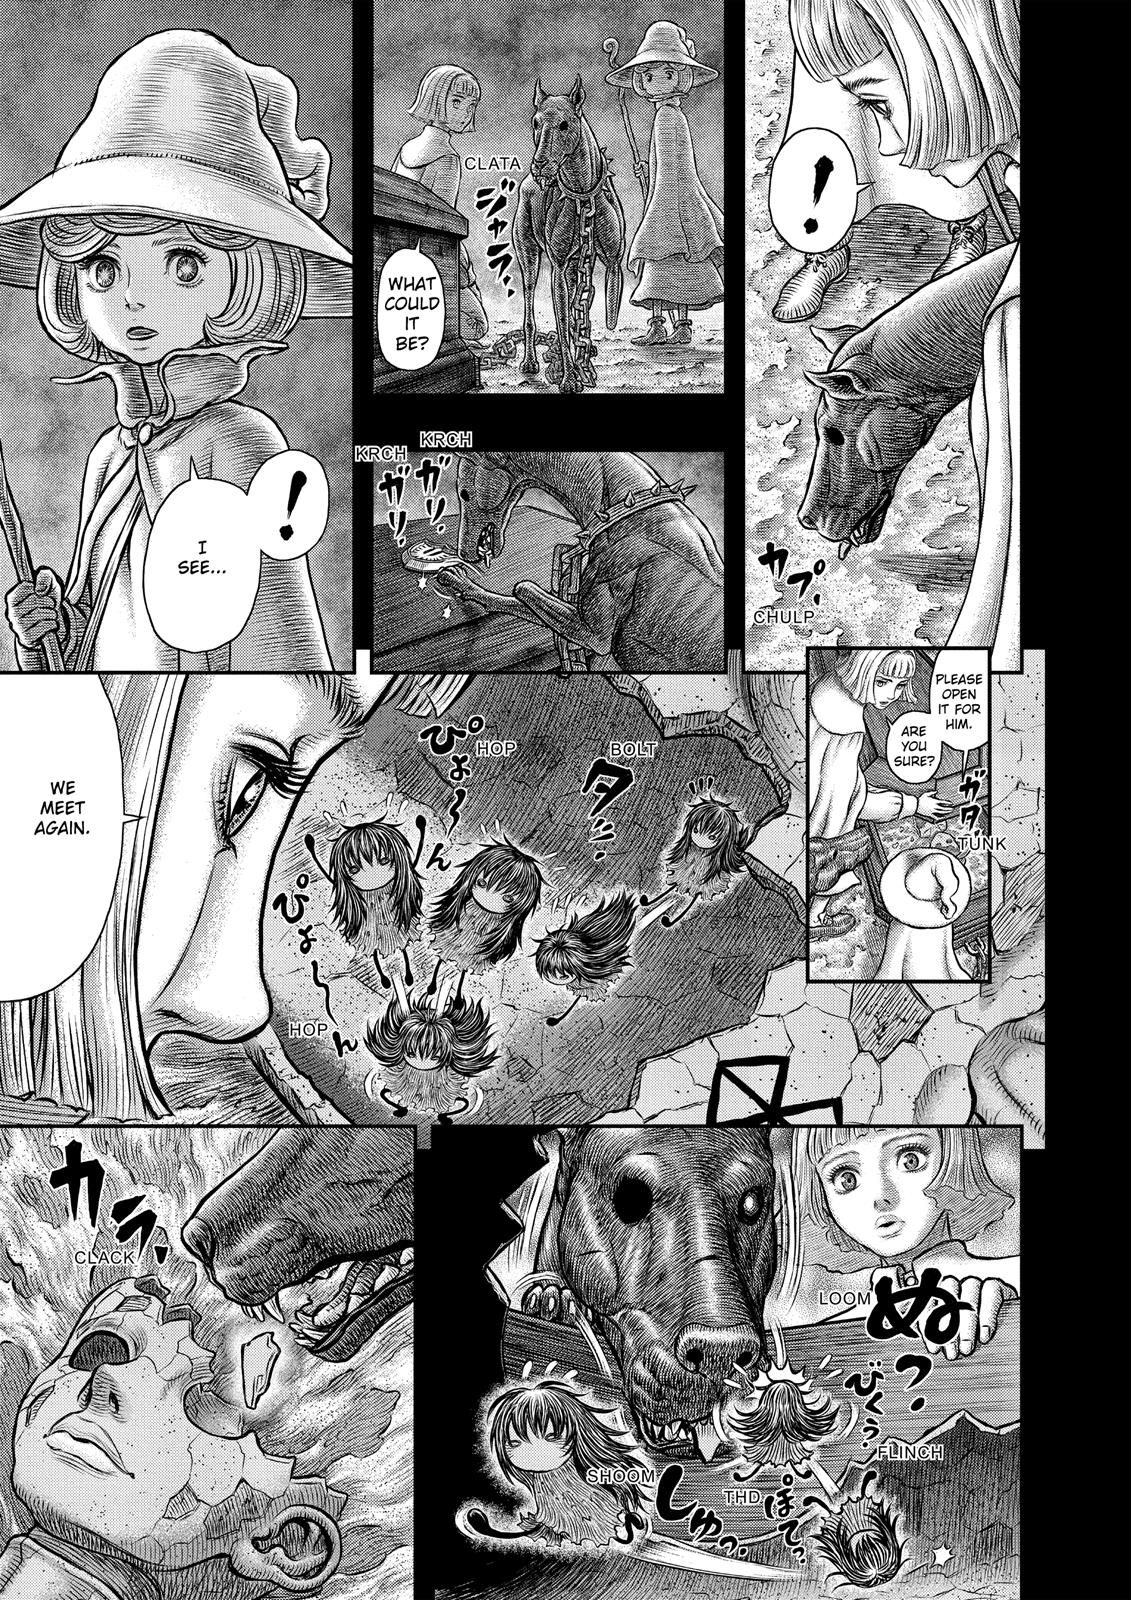 Berserk Manga Chapter 349 image 13